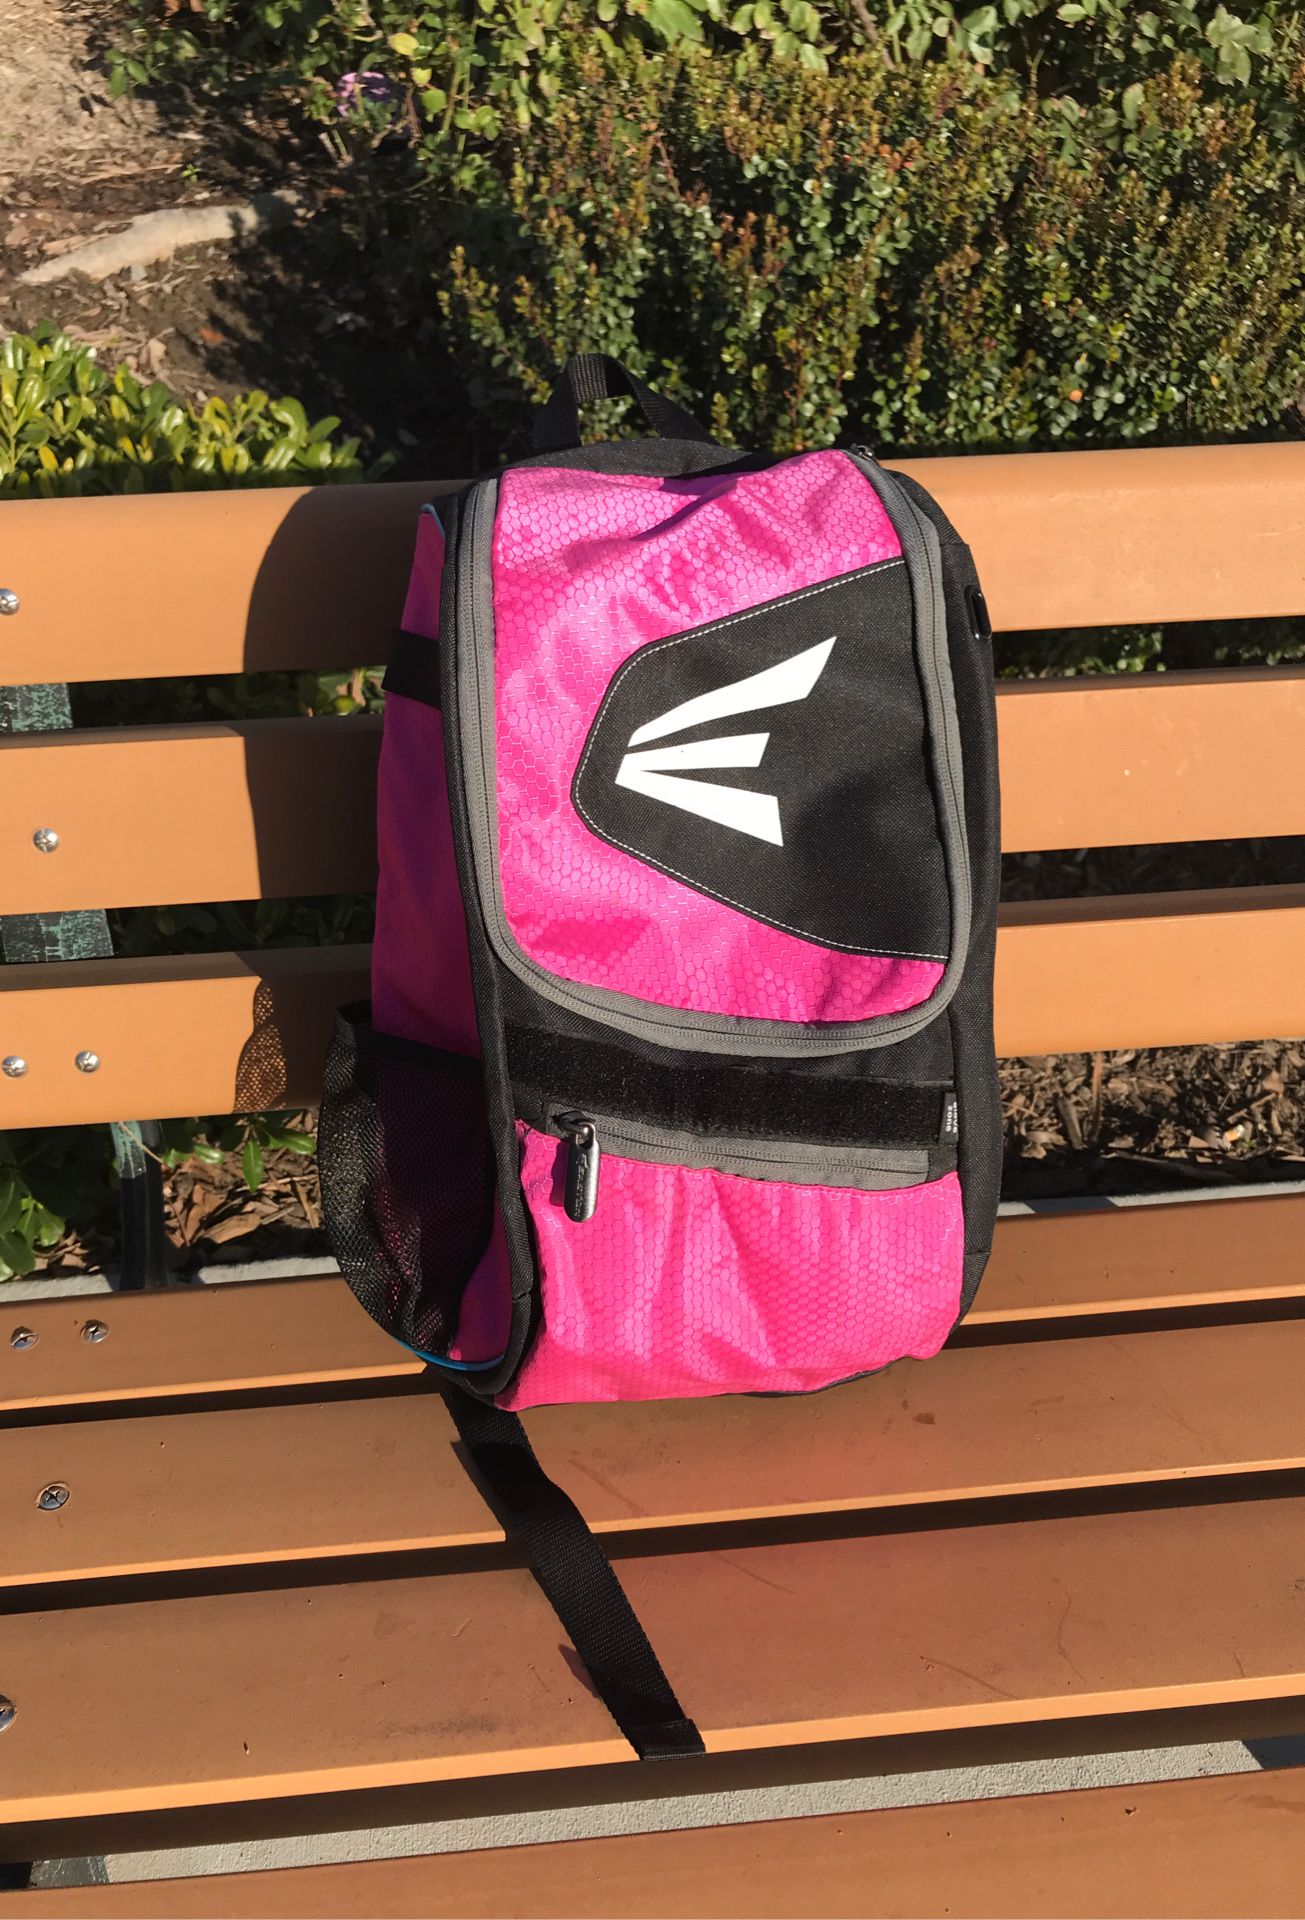 Easton equipment backpack for baseball or softball